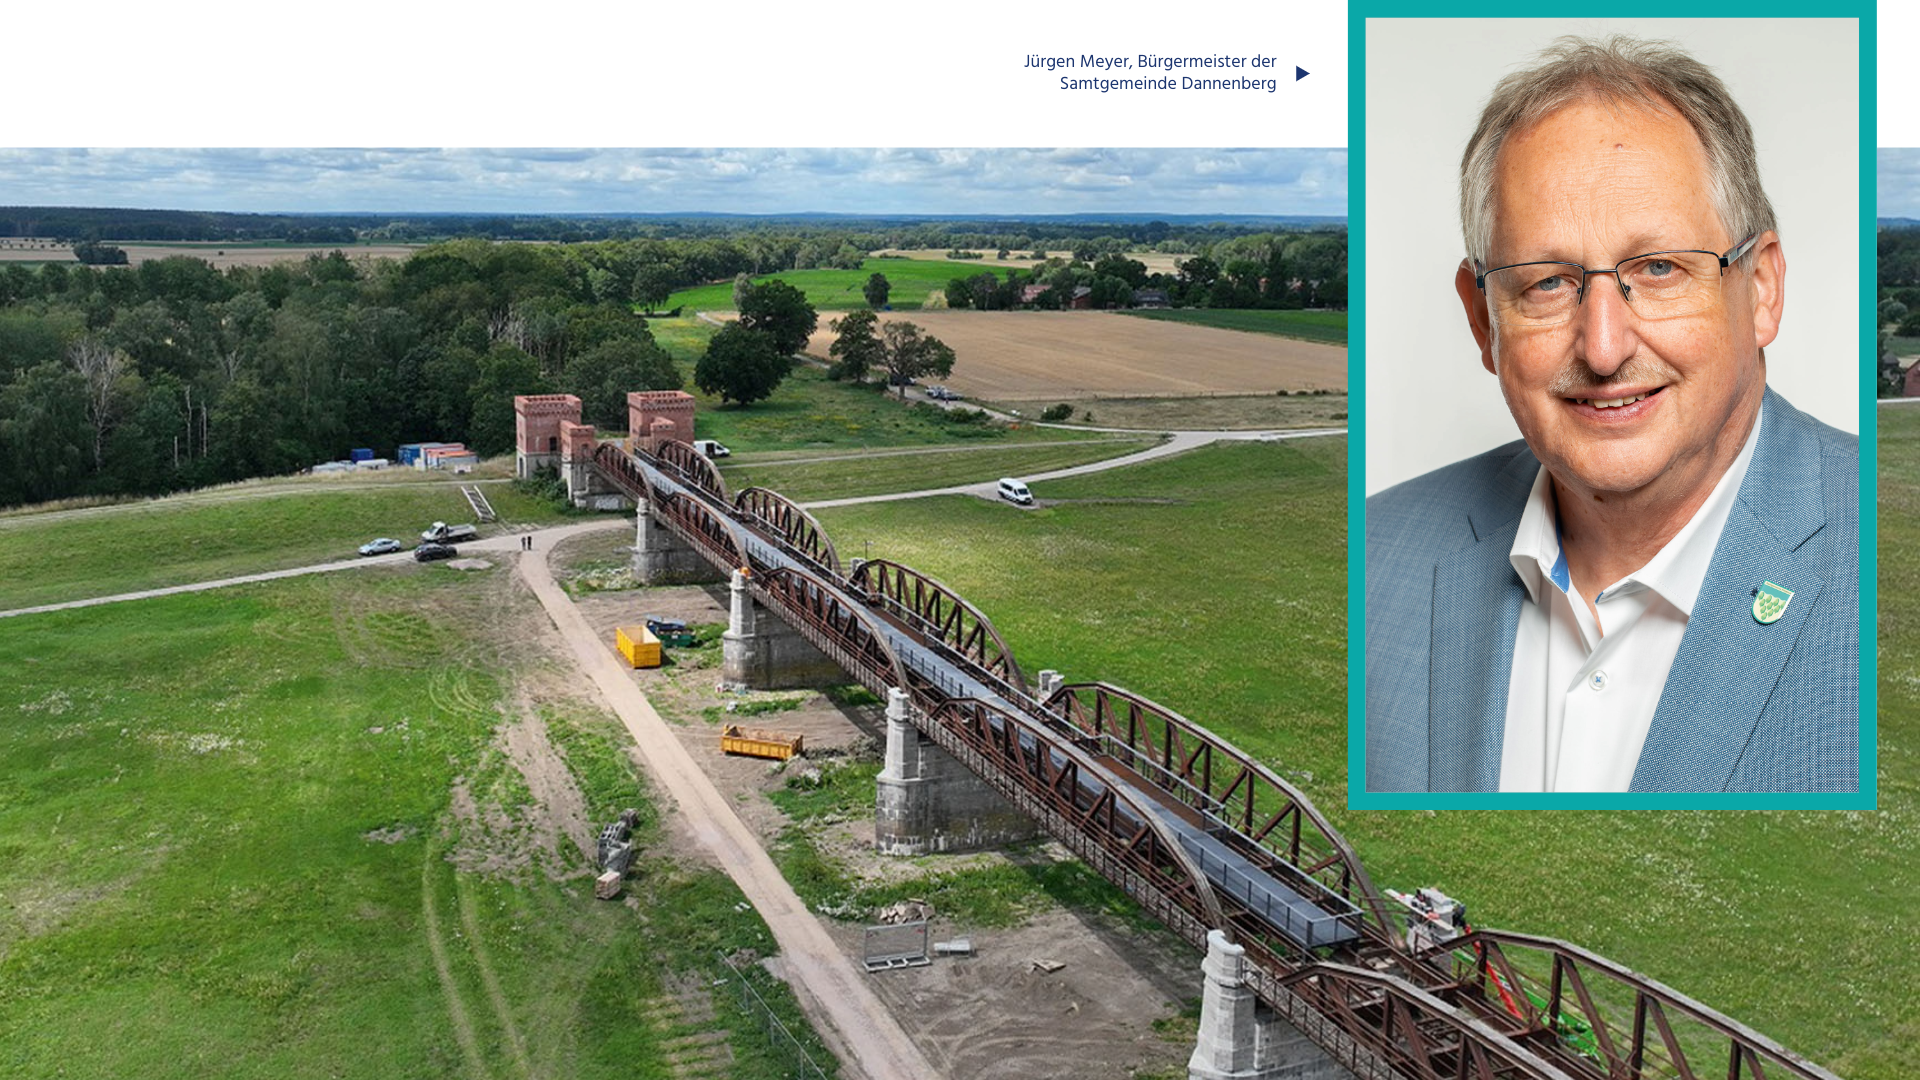 Jürgen Meyer, Bürgermeister der Samtgemeinde Dannenberg & Elbtalaue mit Brücke